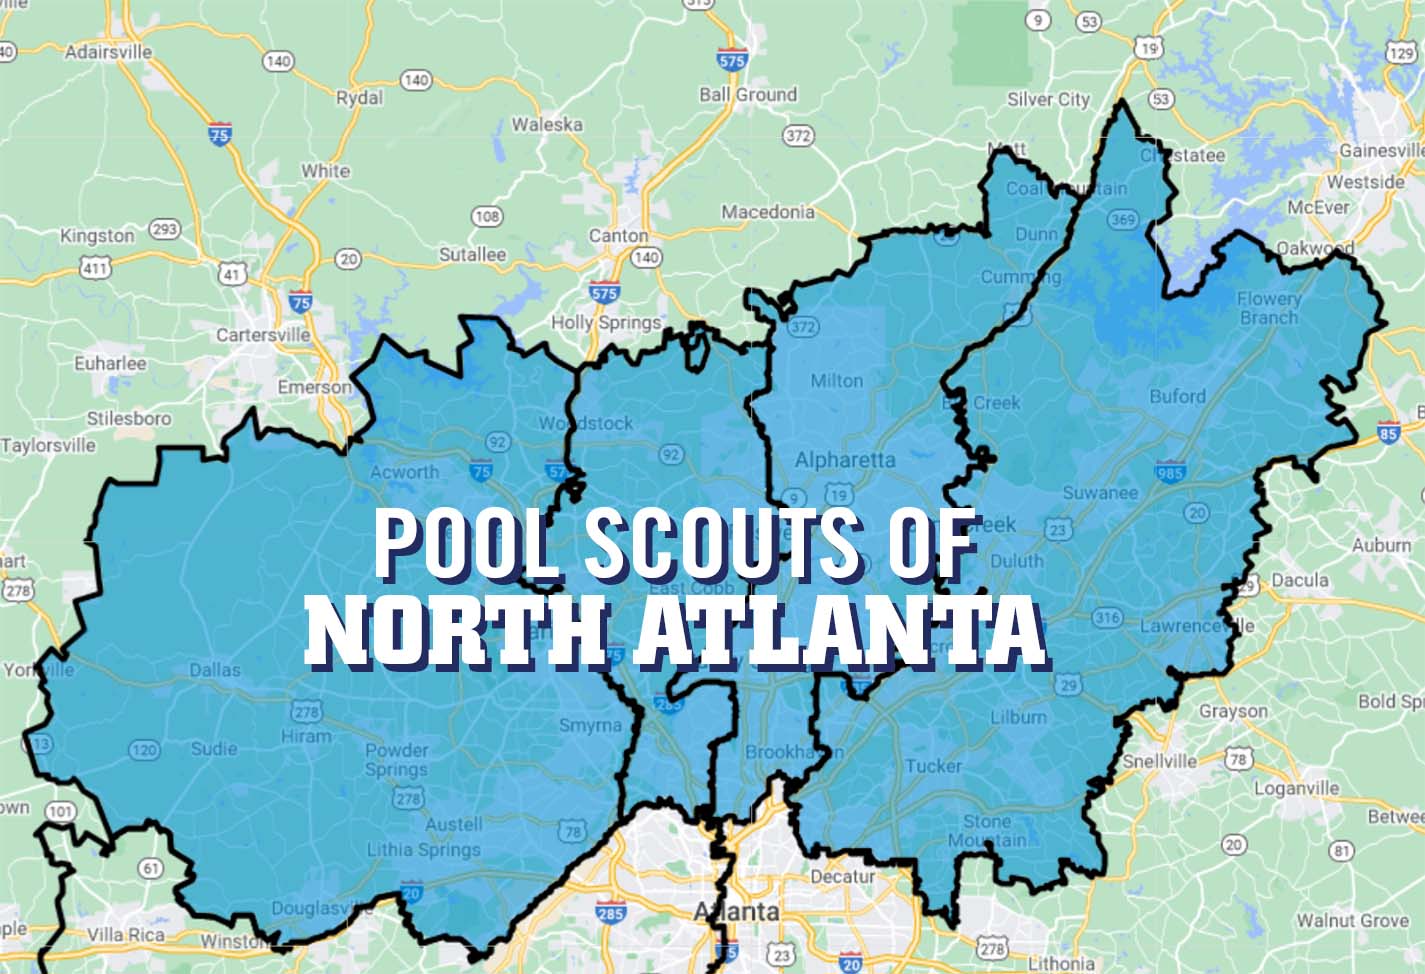 Pool Scouts of North Atlanta territory map